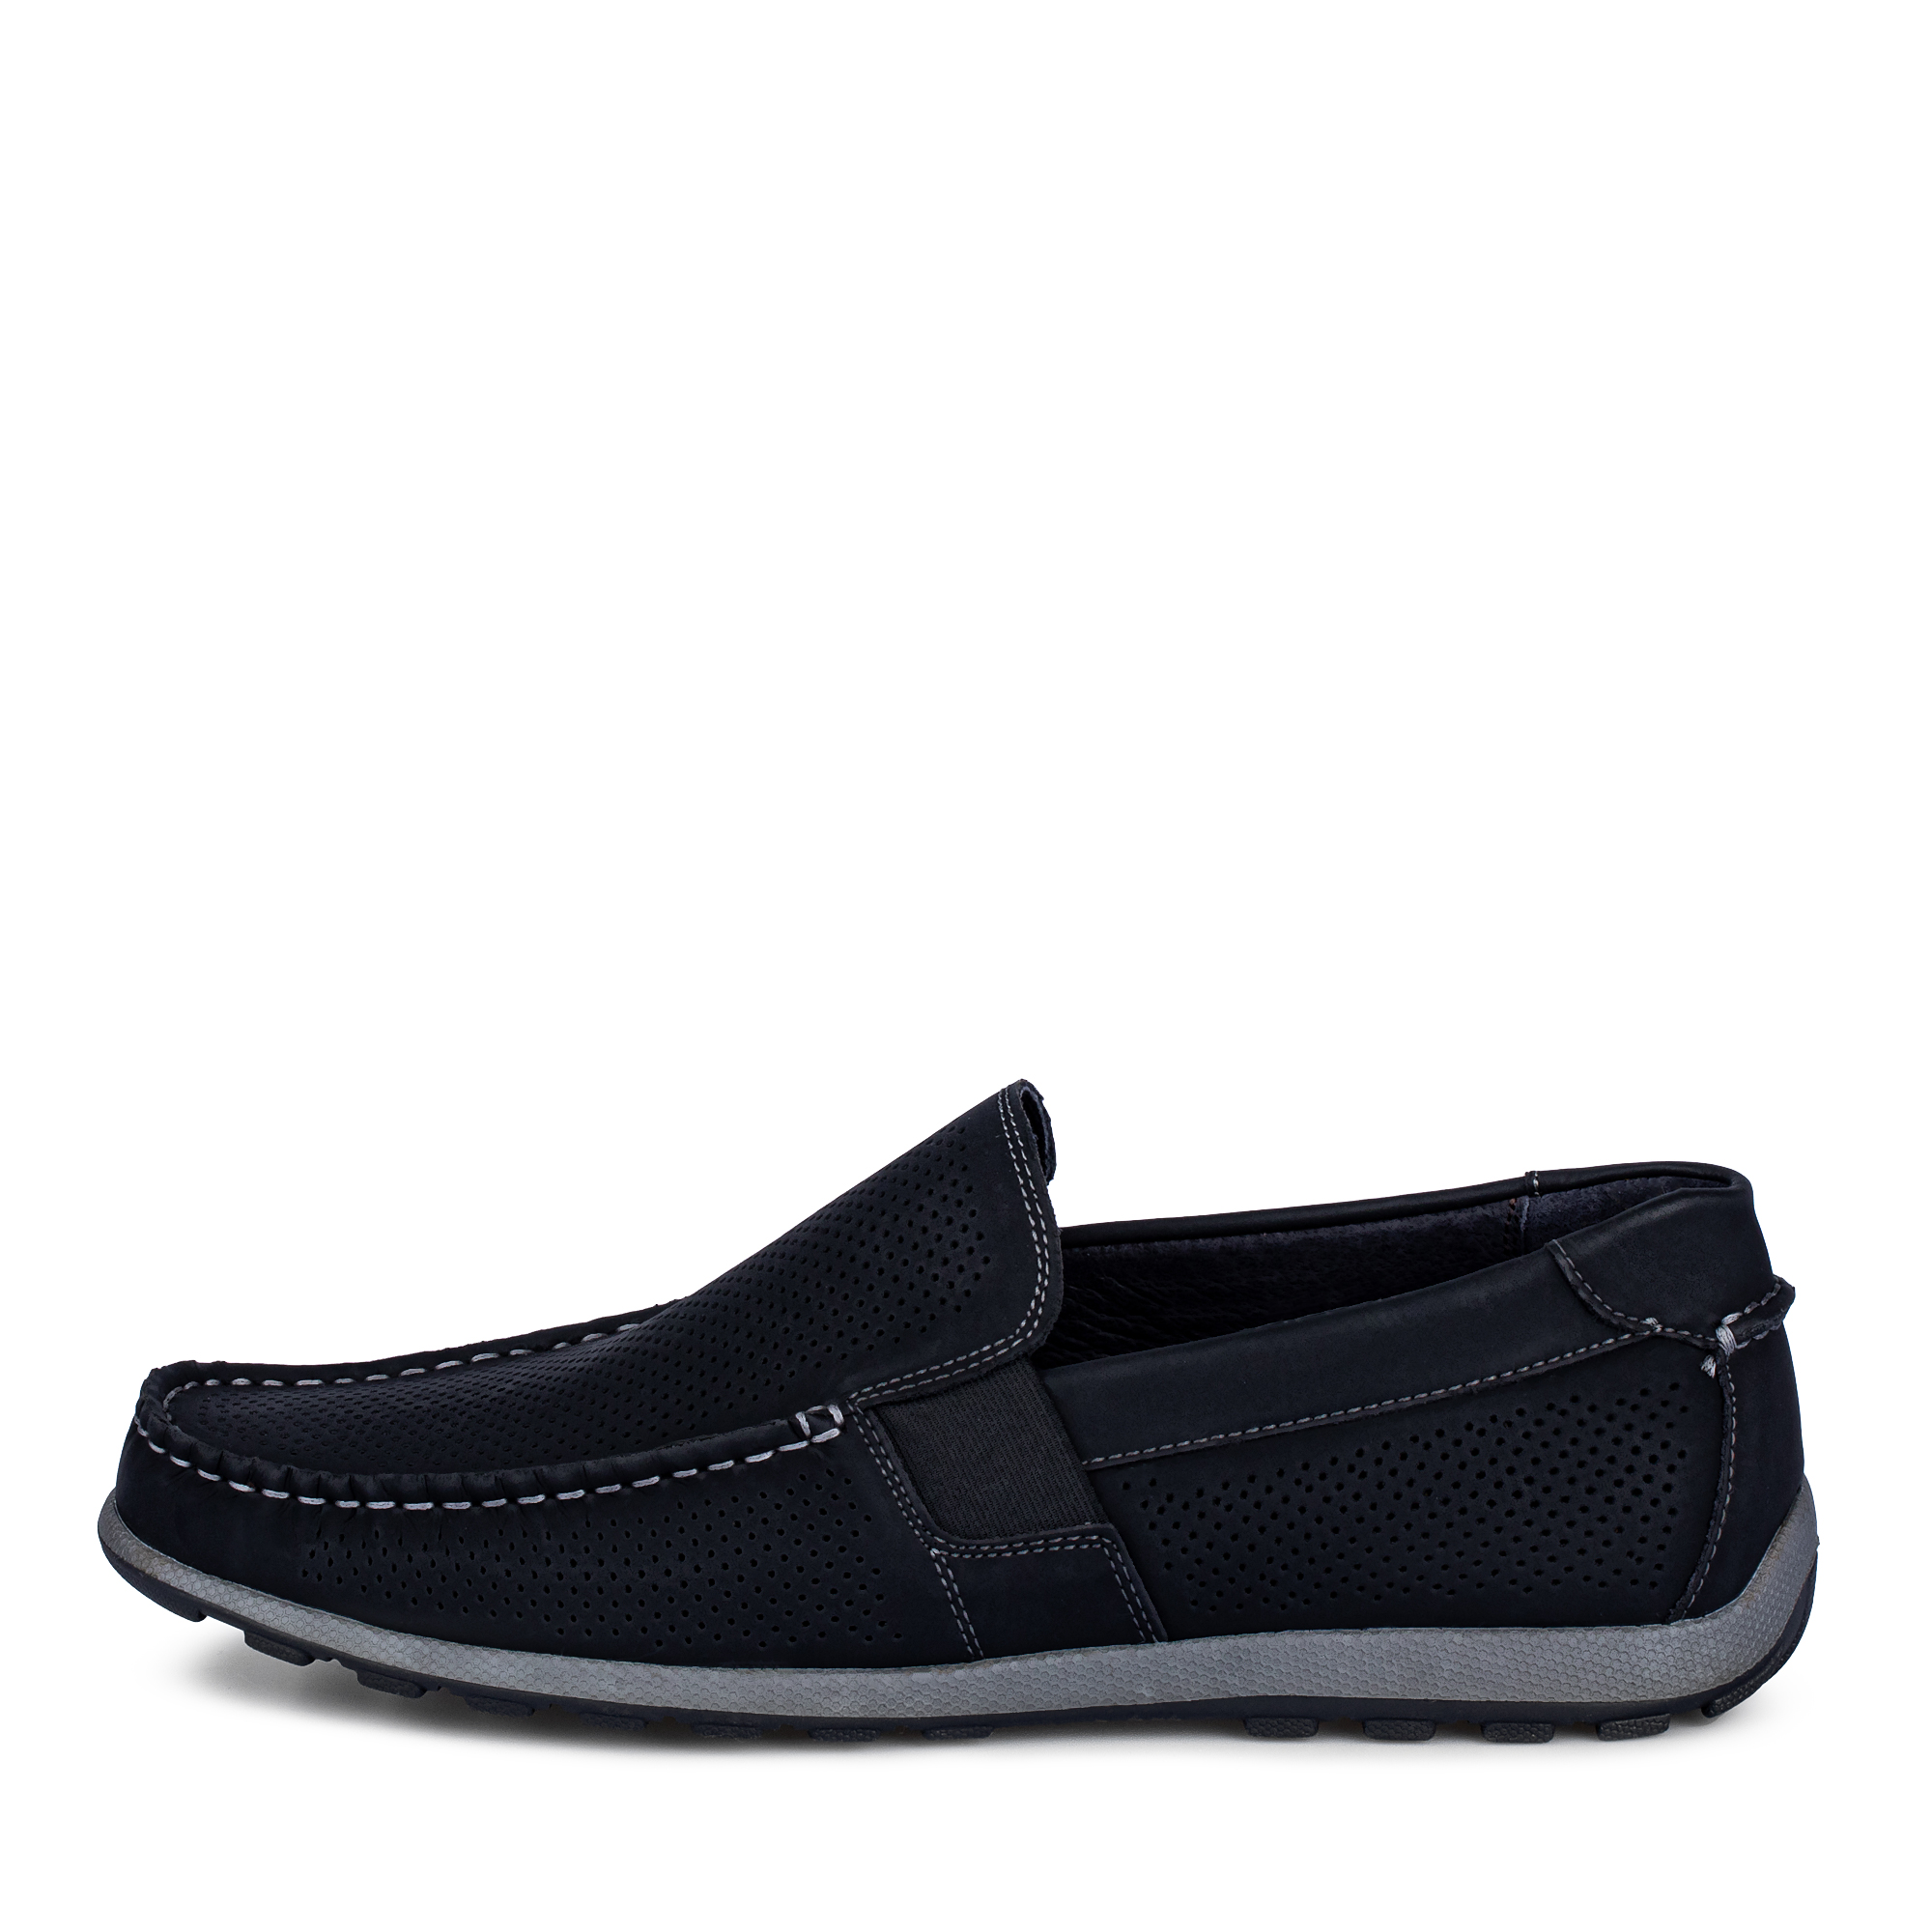 Туфли/полуботинки Thomas Munz 058-124C-1602, цвет черный, размер 41 - фото 1